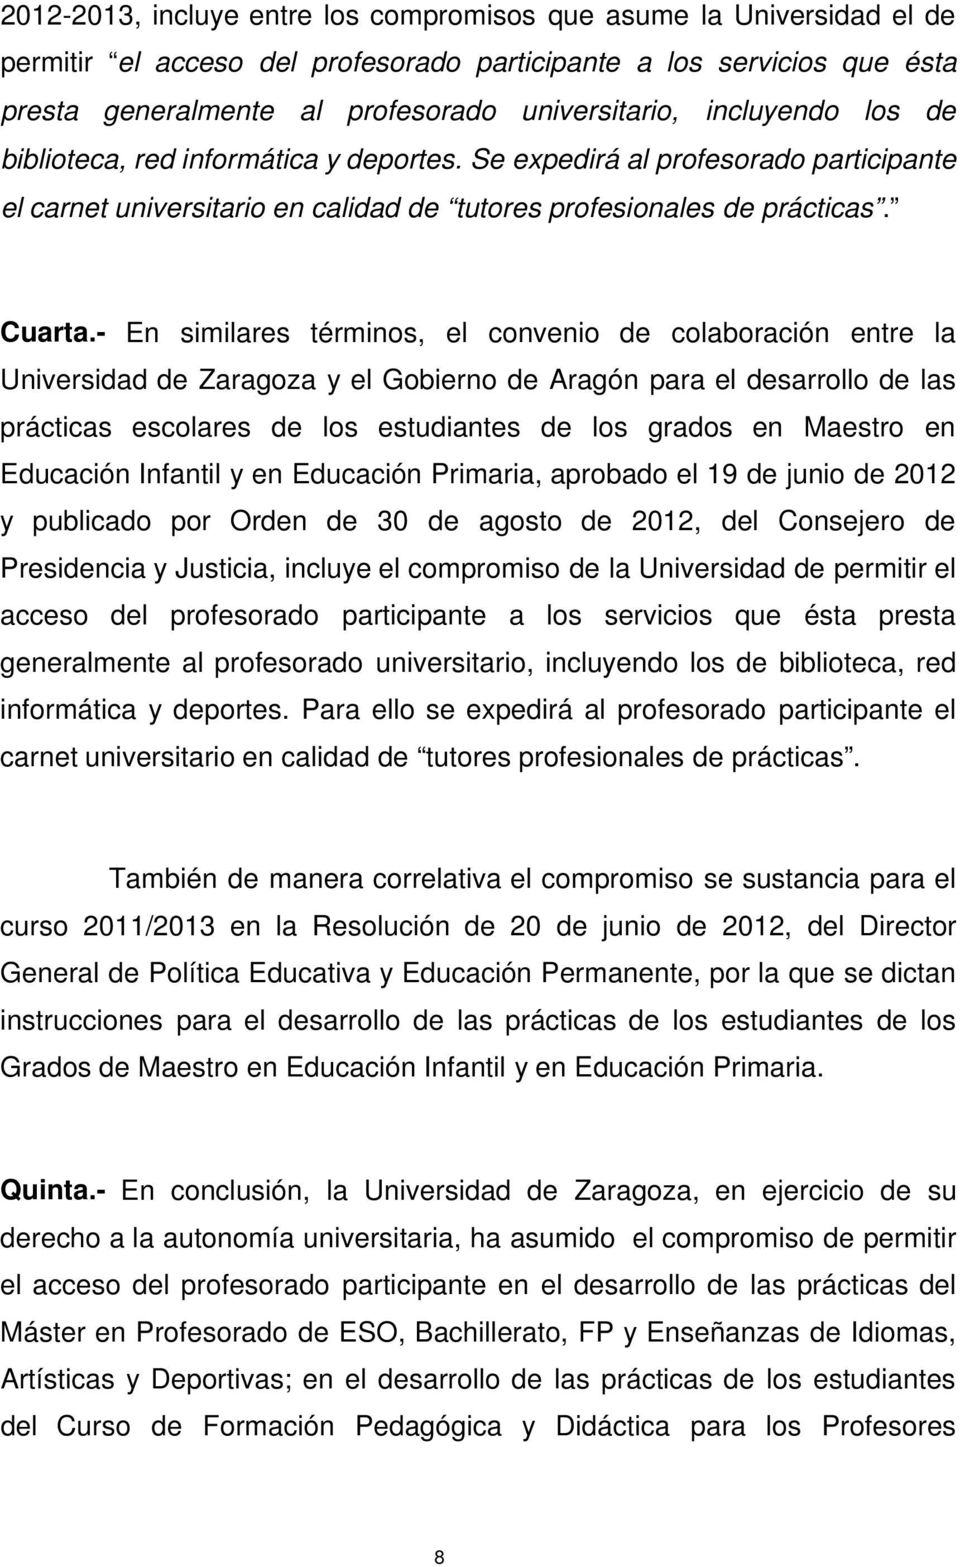 - En similares términos, el convenio de colaboración entre la Universidad de Zaragoza y el Gobierno de Aragón para el desarrollo de las prácticas escolares de los estudiantes de los grados en Maestro